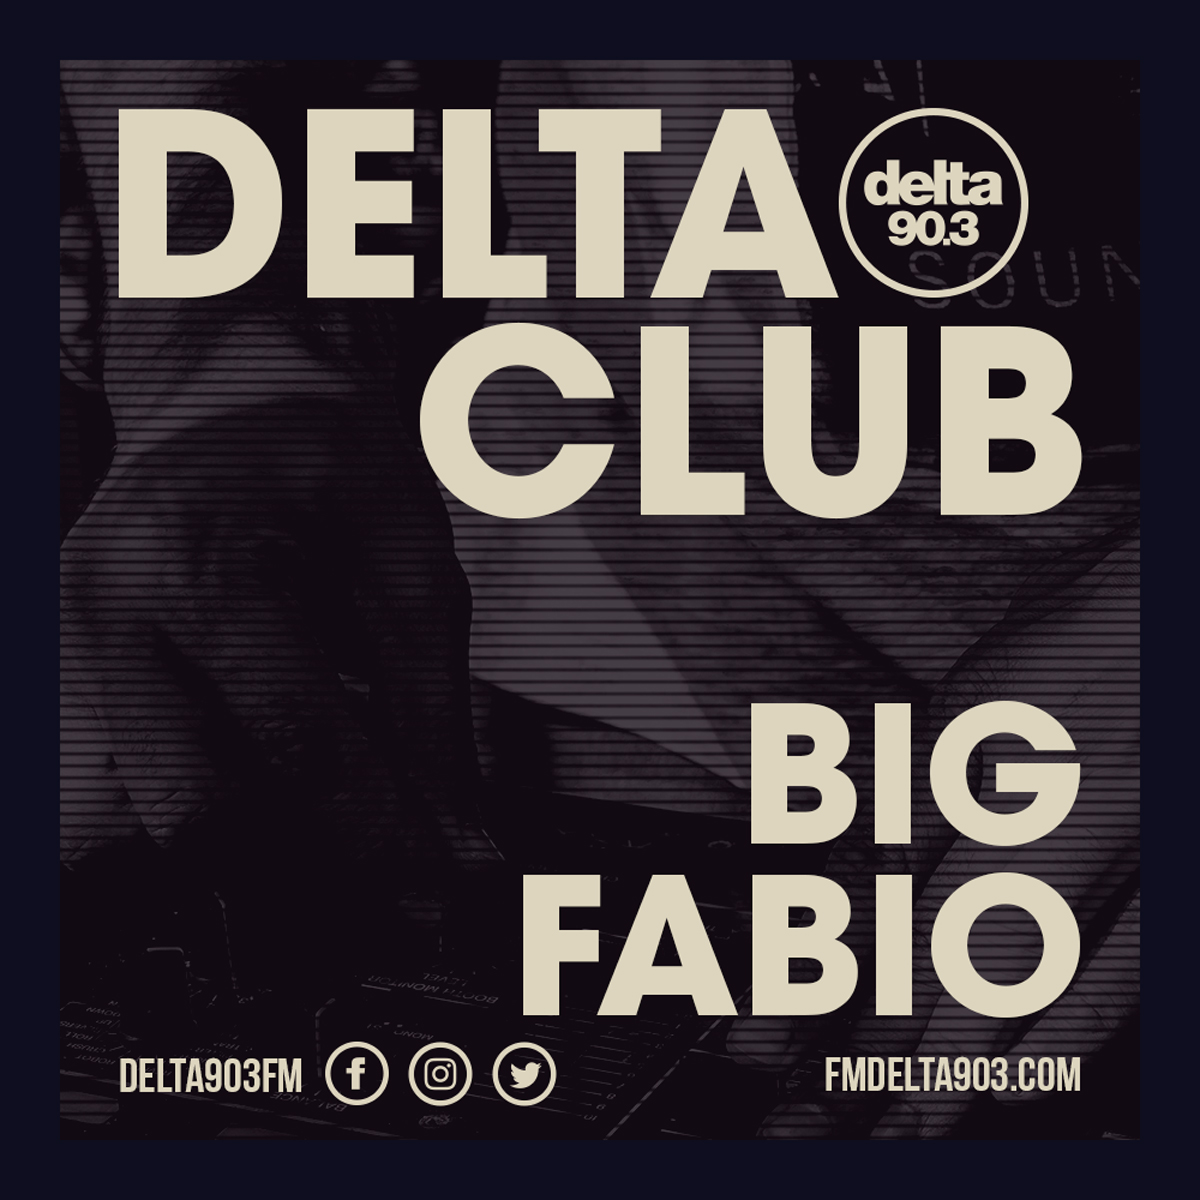 Delta Podcasts - Delta Club presents Big Fabio (25.04.2018)